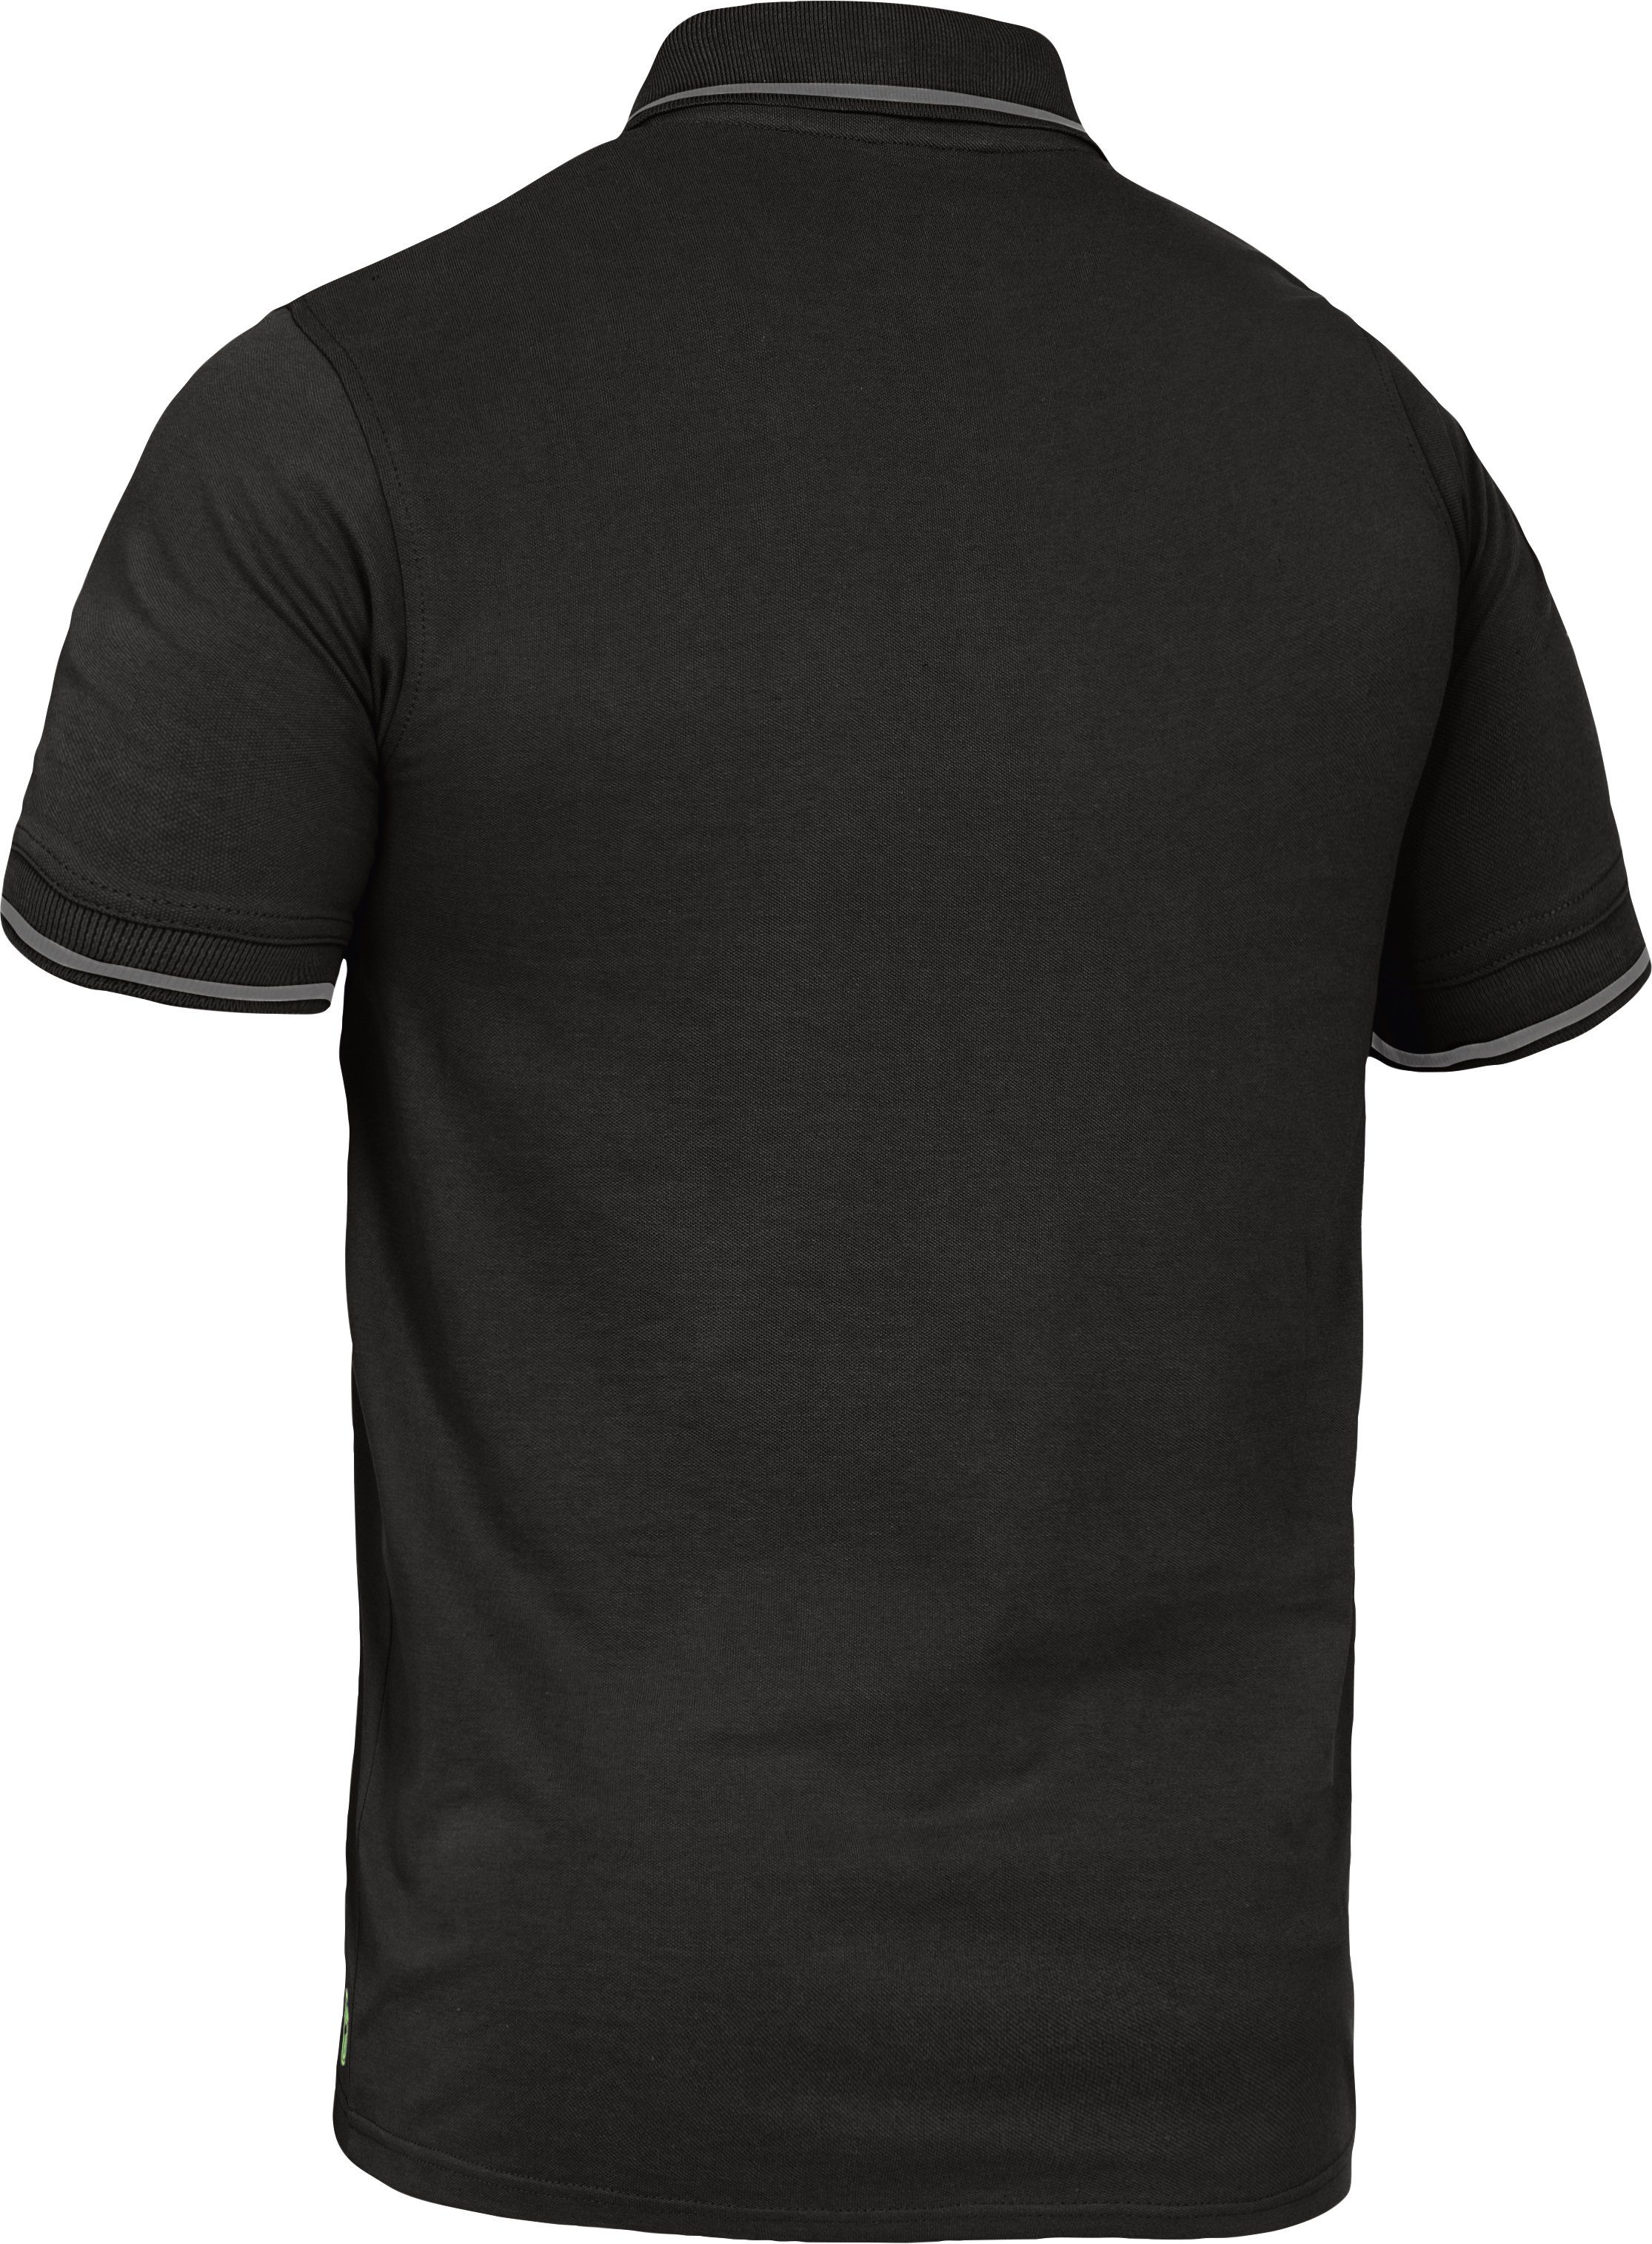 Flex-Line Leibwächter Herren Poloshirt Poloshirt schwarz